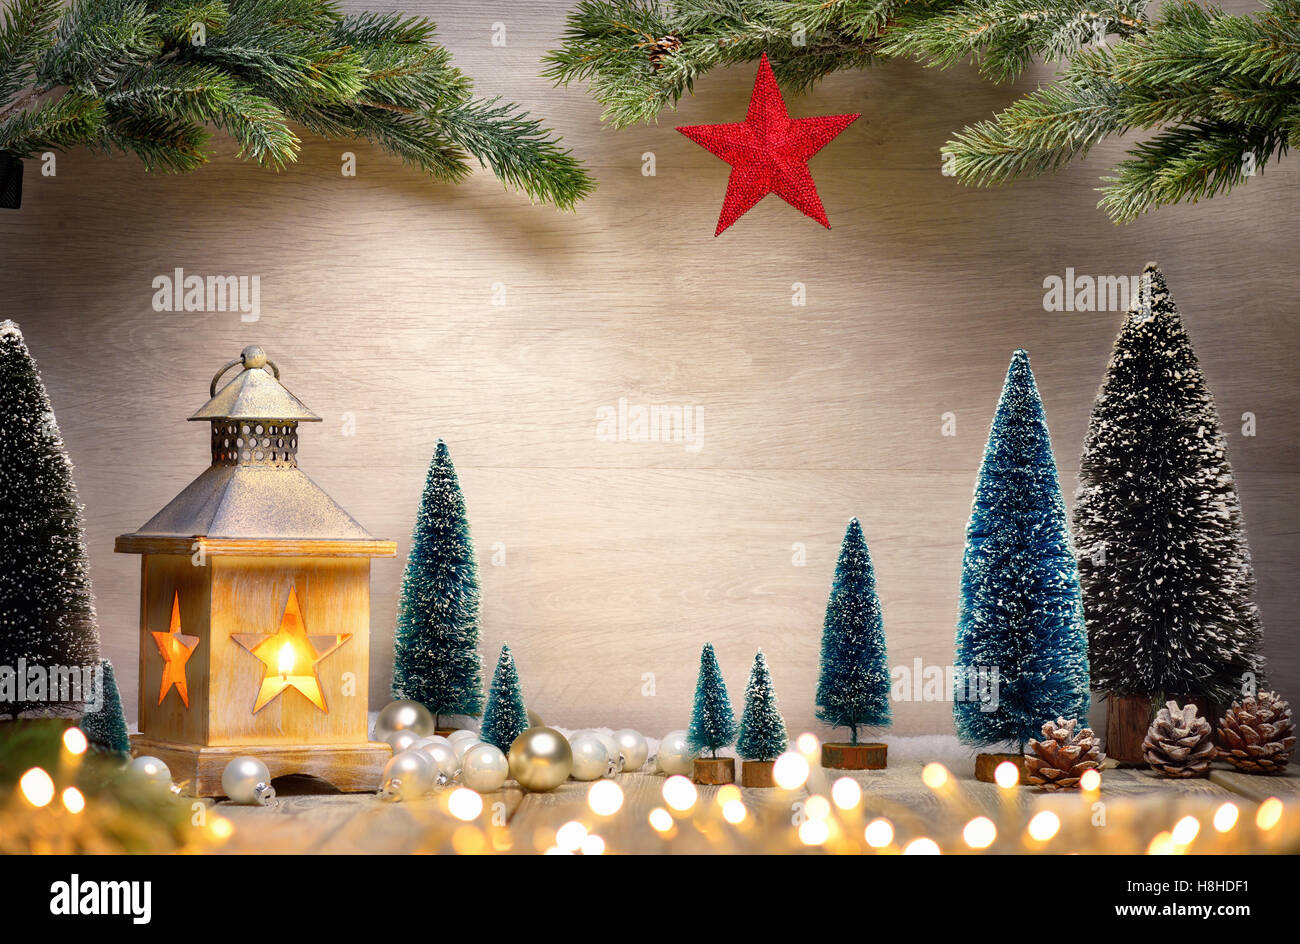 Weihnachten Hintergrund der Szene mit einer Laterne, Bäume, Tannenzweigen, roter Stern und unscharfen Lichter vor einem Holzbrett als Kopie s Stockfoto